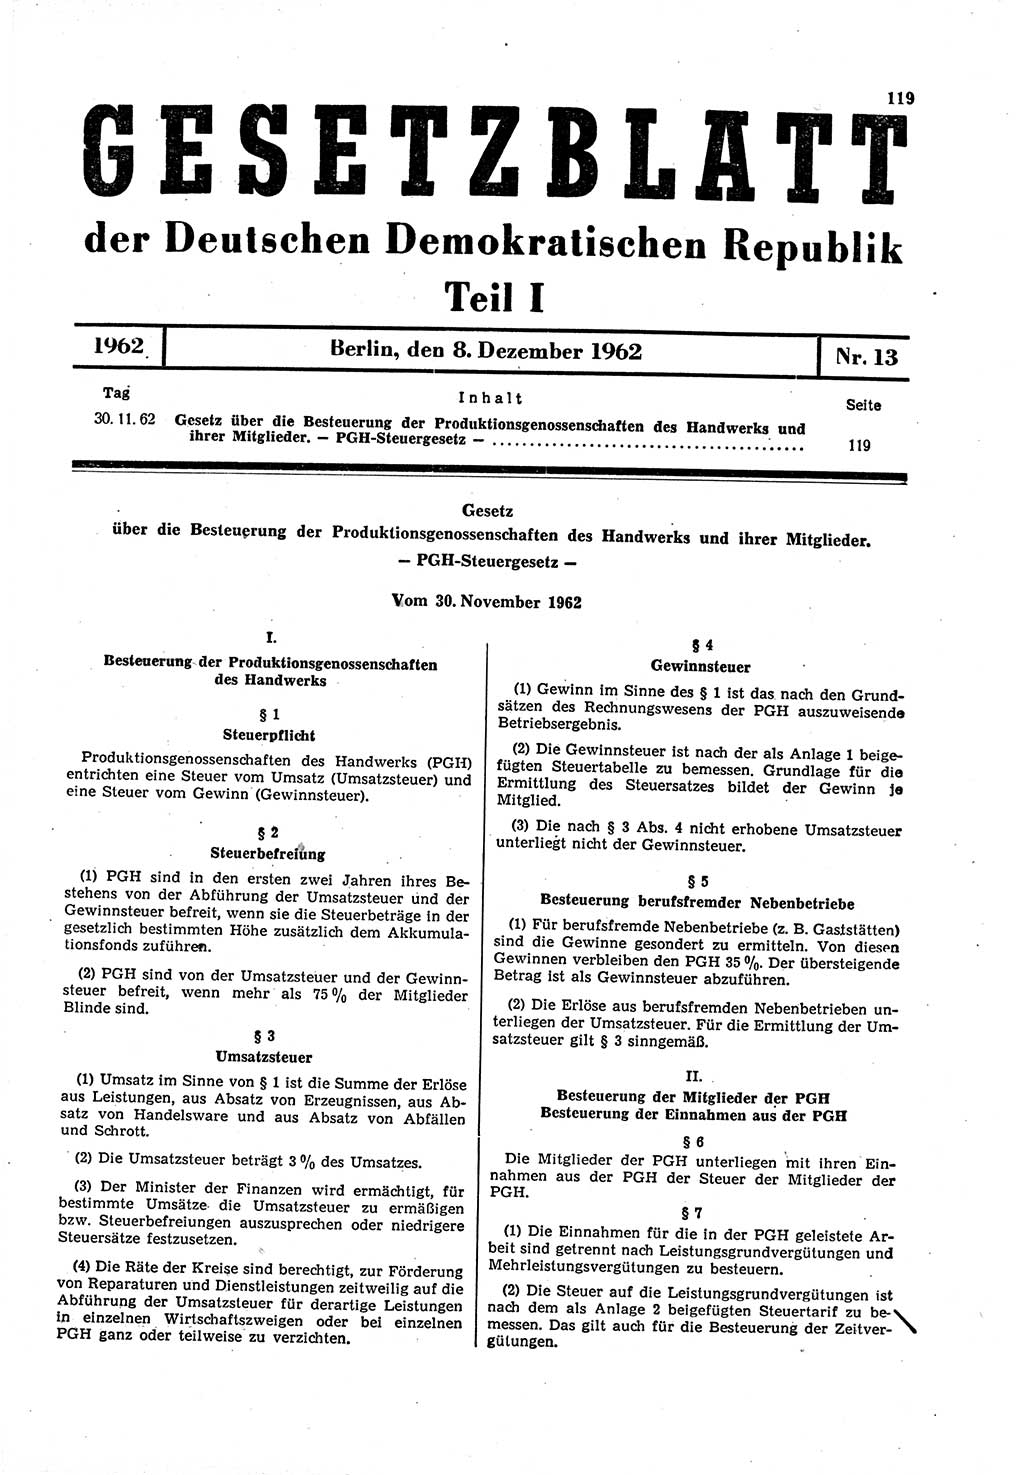 Gesetzblatt (GBl.) der Deutschen Demokratischen Republik (DDR) Teil Ⅰ 1962, Seite 119 (GBl. DDR Ⅰ 1962, S. 119)